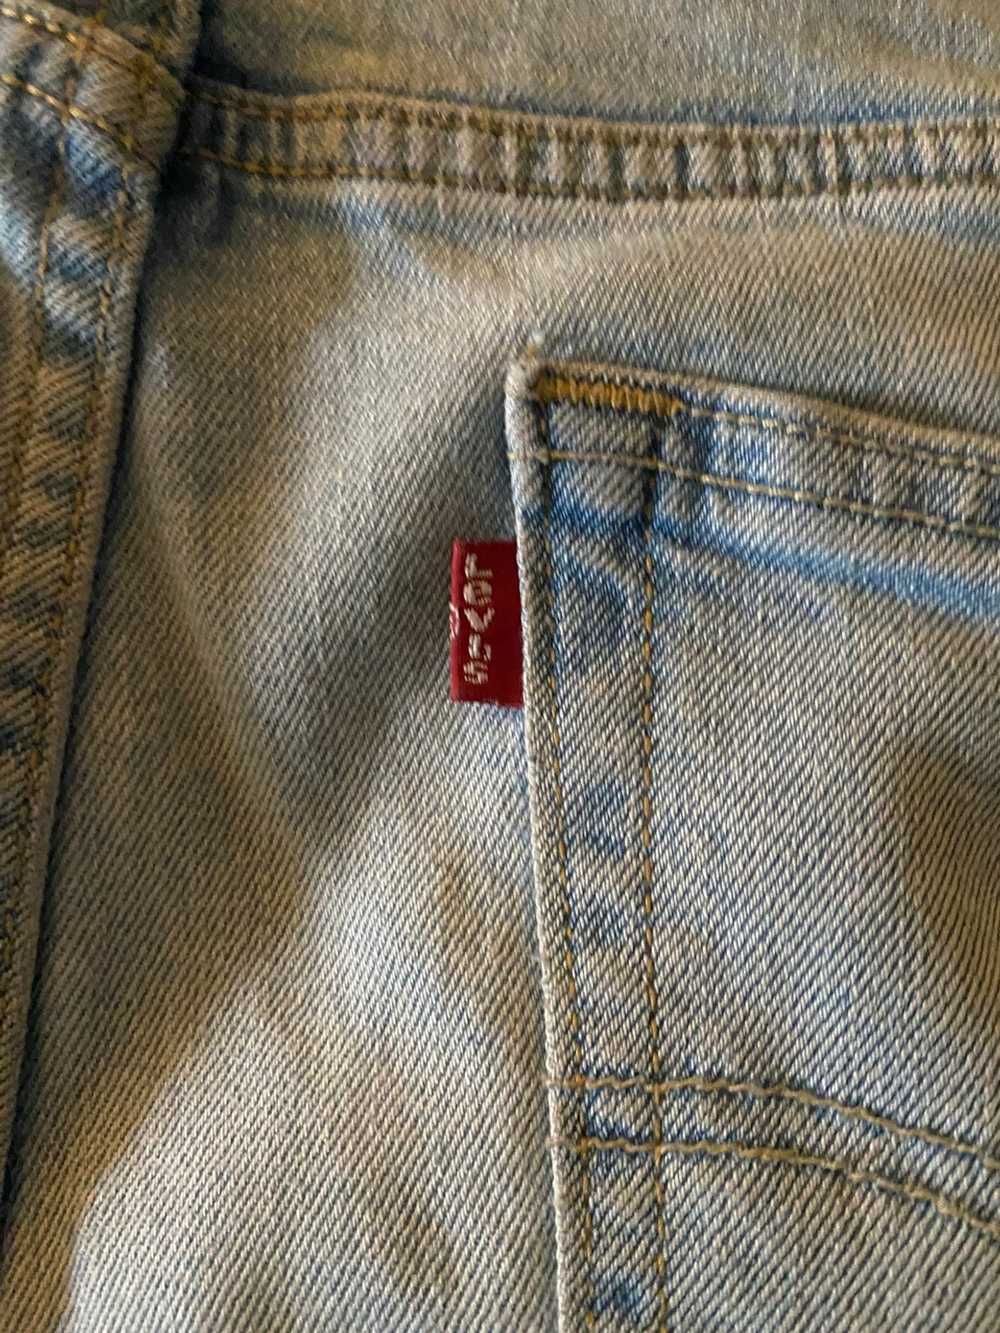 Levi's Levi’s 510 Light Wash Jeans - image 3